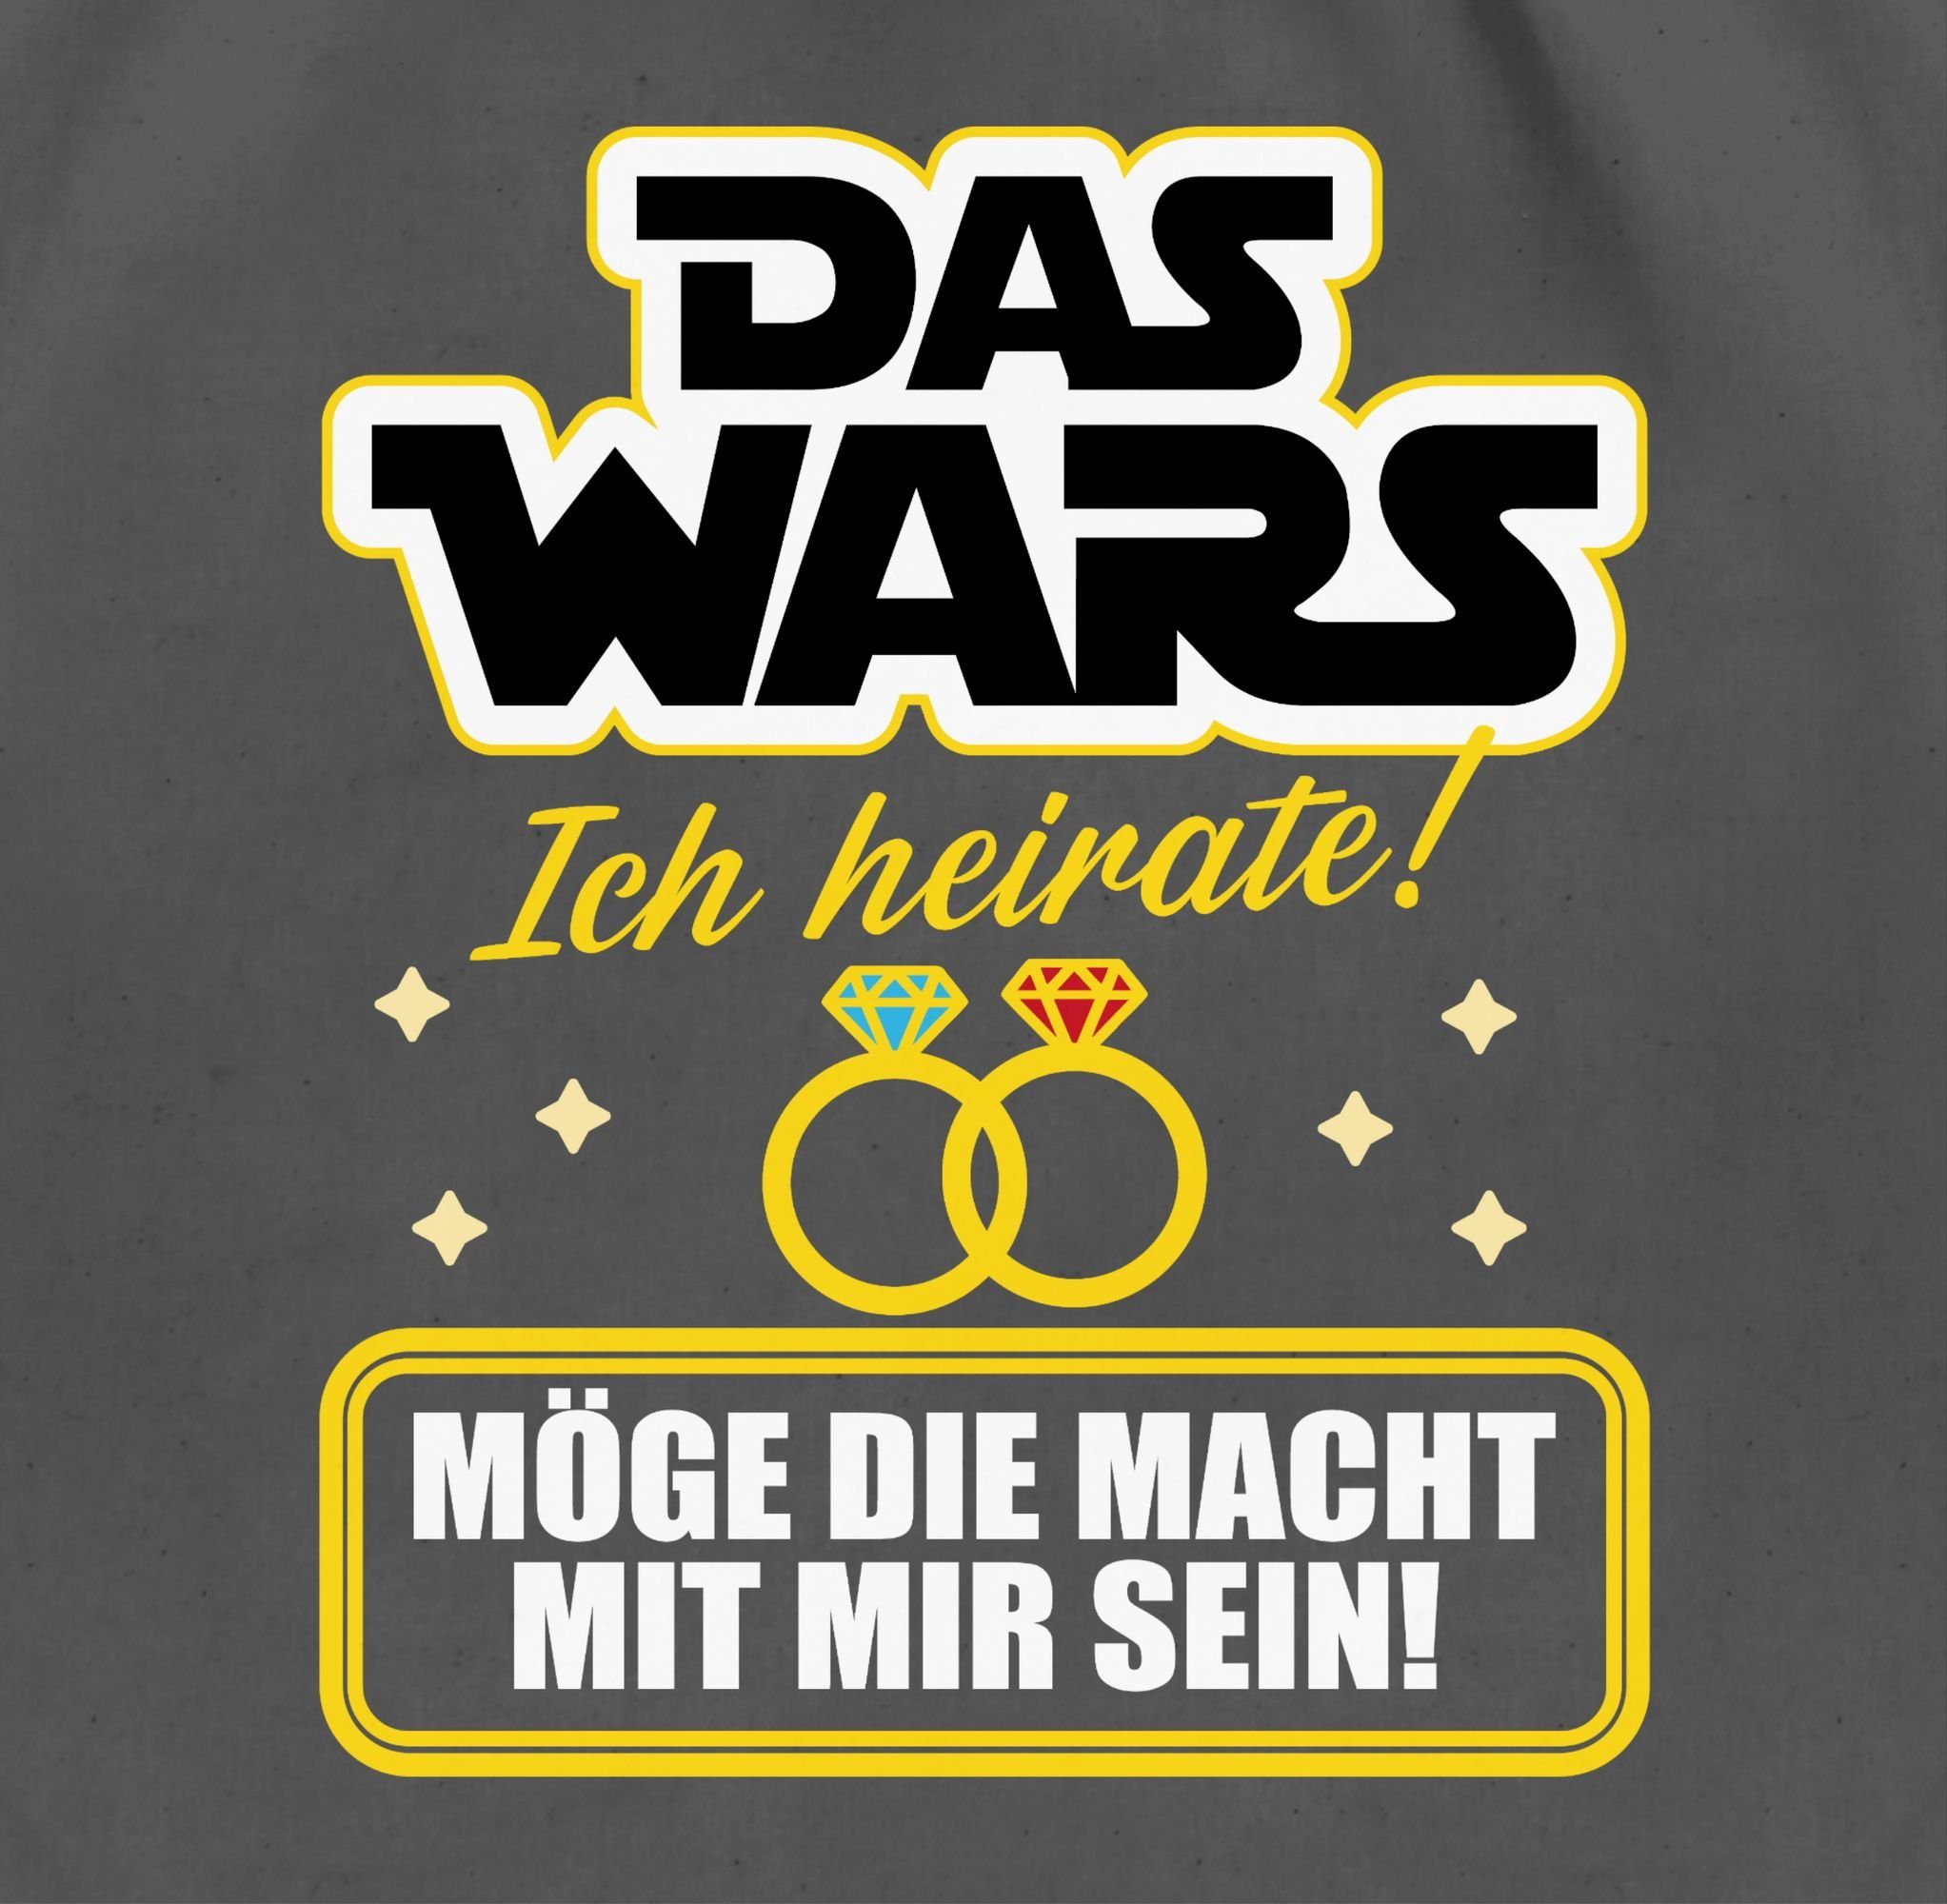 Shirtracer Turnbeutel Das Wars - JGA Männer Ich gelb/weiß, 03 heirate - Dunkelgrau